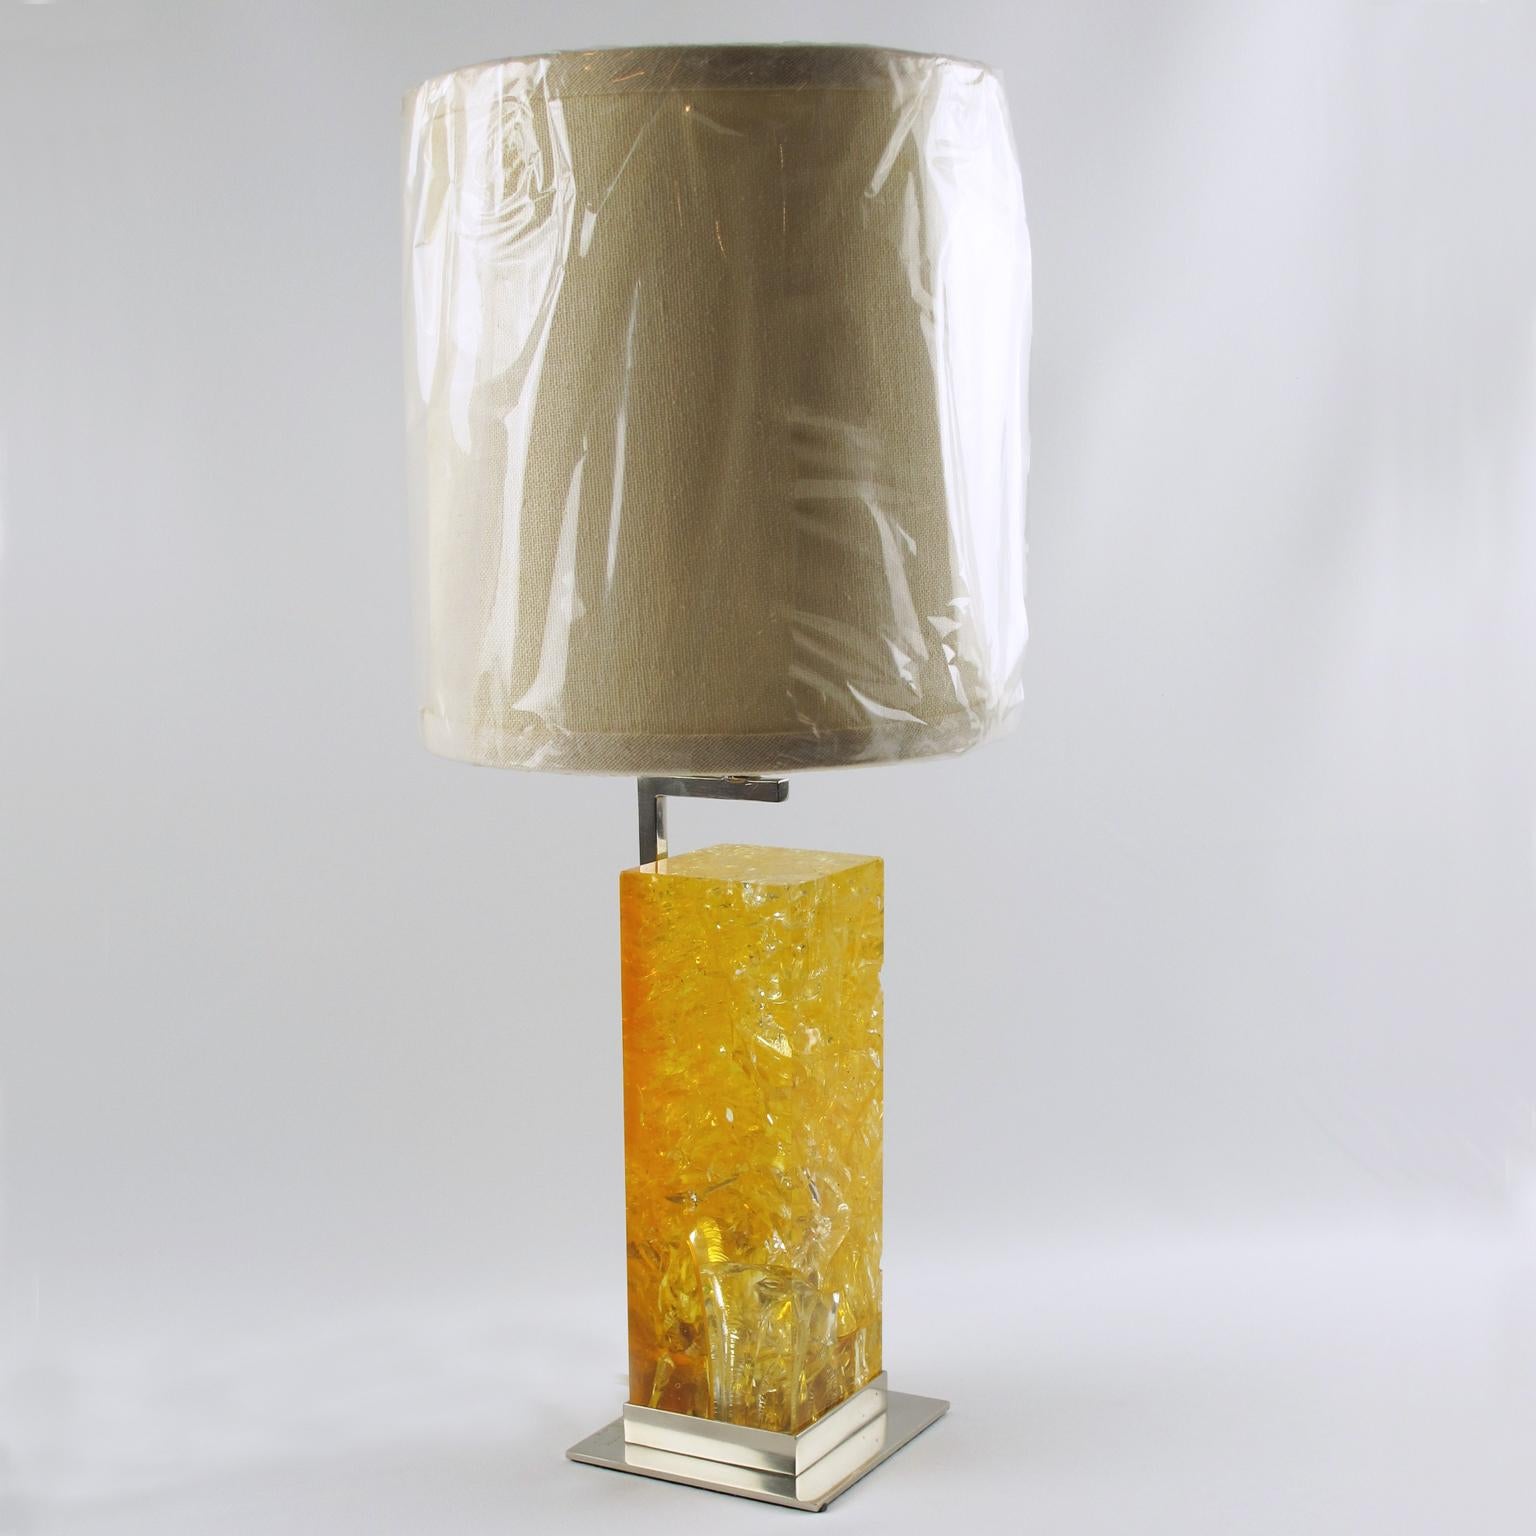 Die französische Designerin Marie-Claude de Fouquieres entwarf in den 1970er Jahren für das französische Beleuchtungsunternehmen Ombre et Lumiere in Paris diese atemberaubende Tischleuchte aus fraktalem Harz. Das Stück besteht aus einem großen